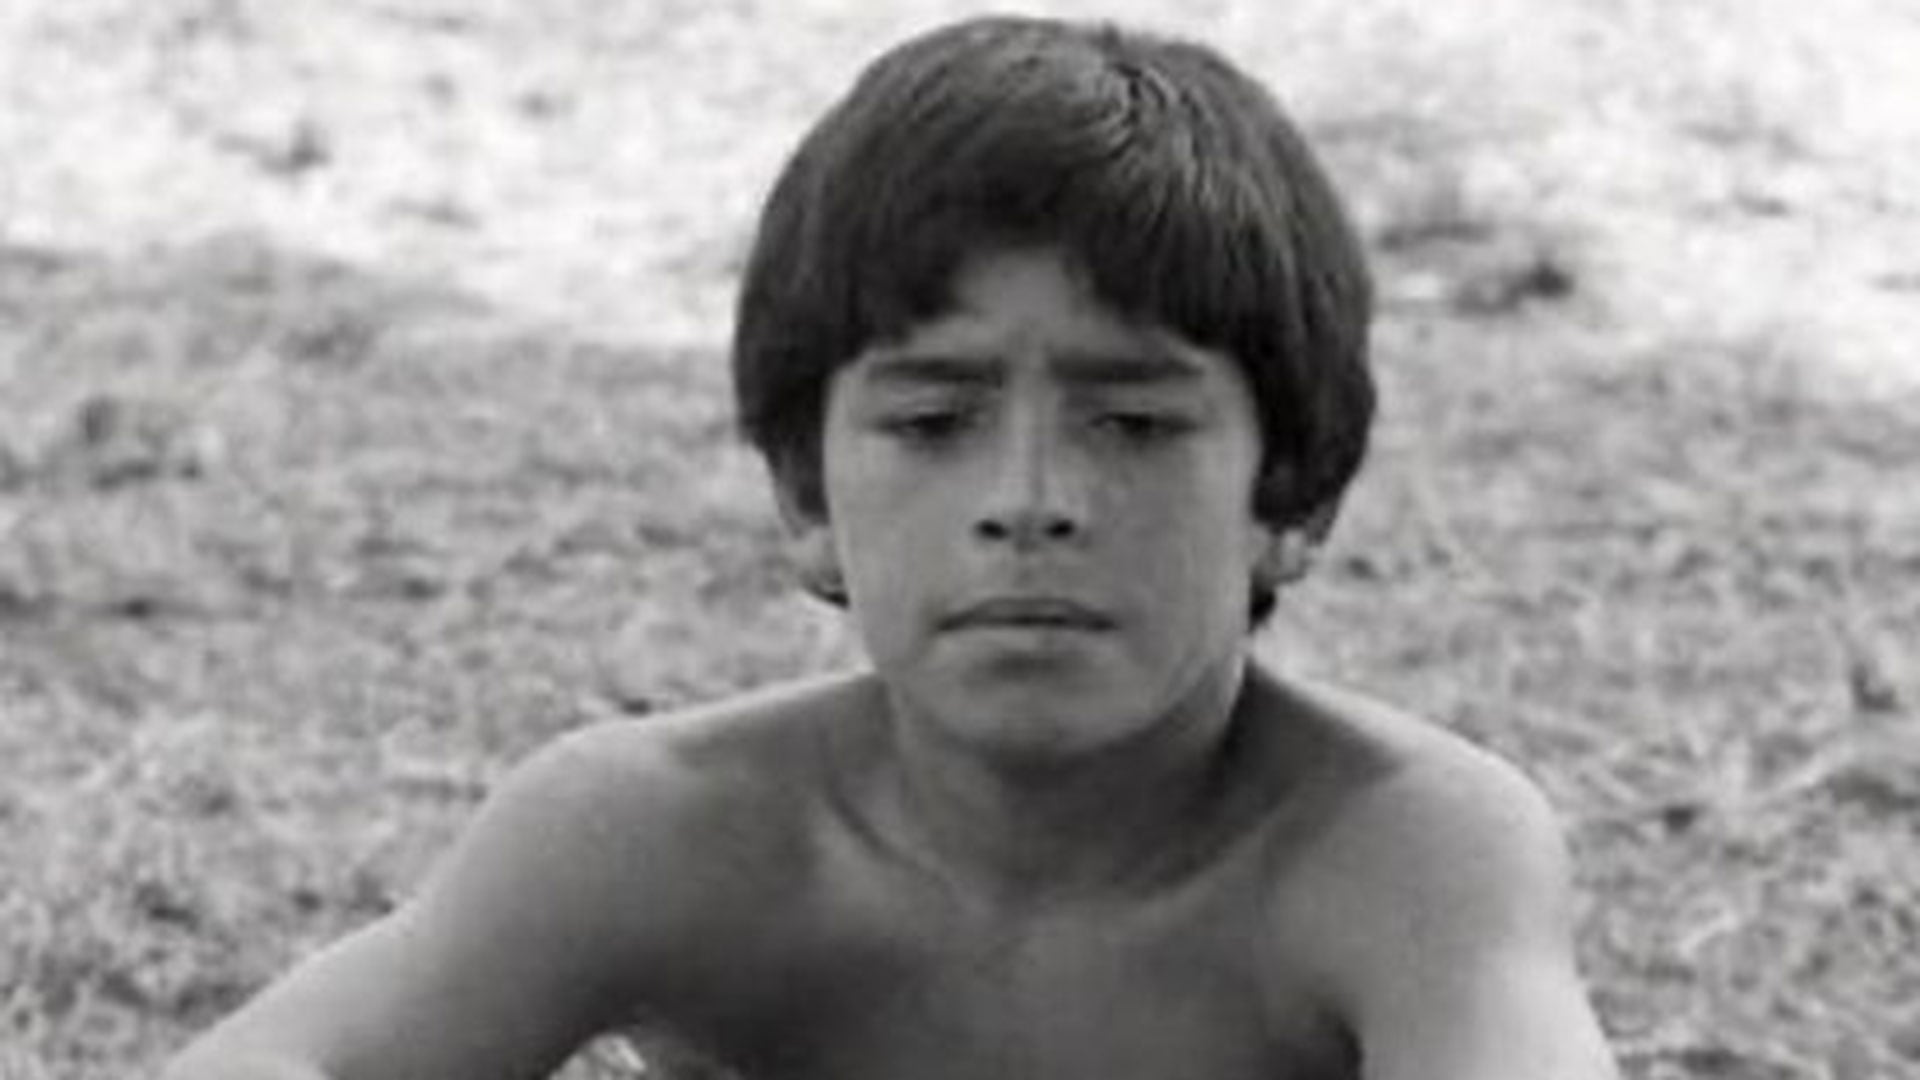 Diego Maradona Los Cebollitas